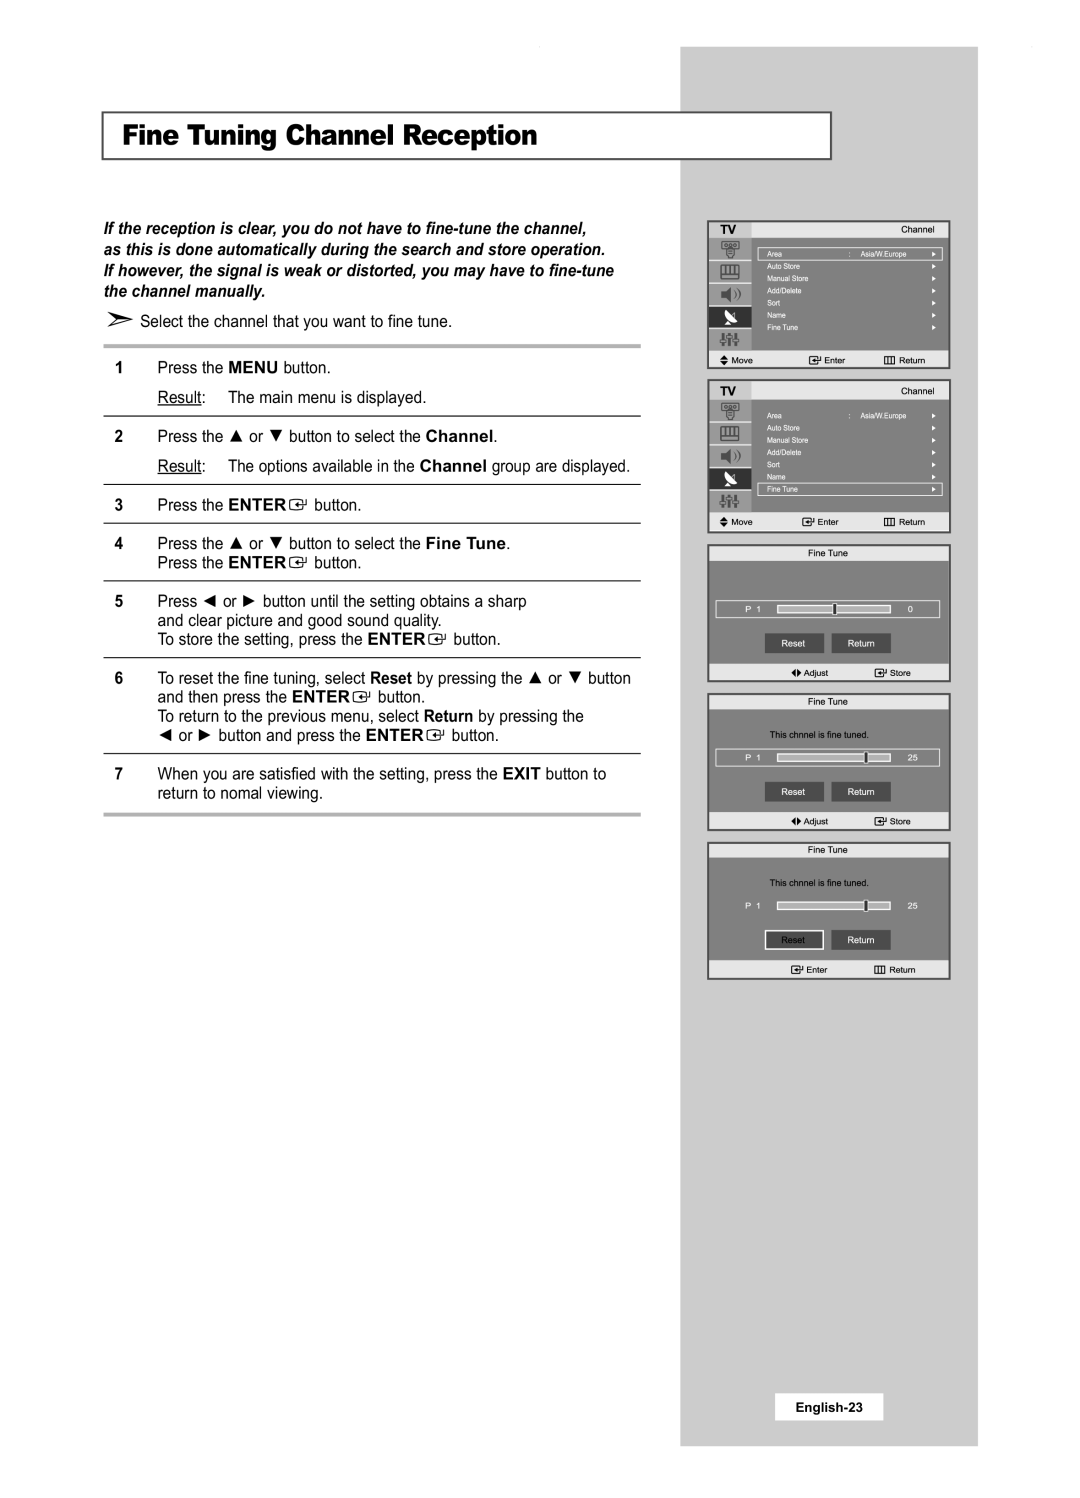 Samsung LA22N21B manual Fine Tuning Channel Reception, English-23 